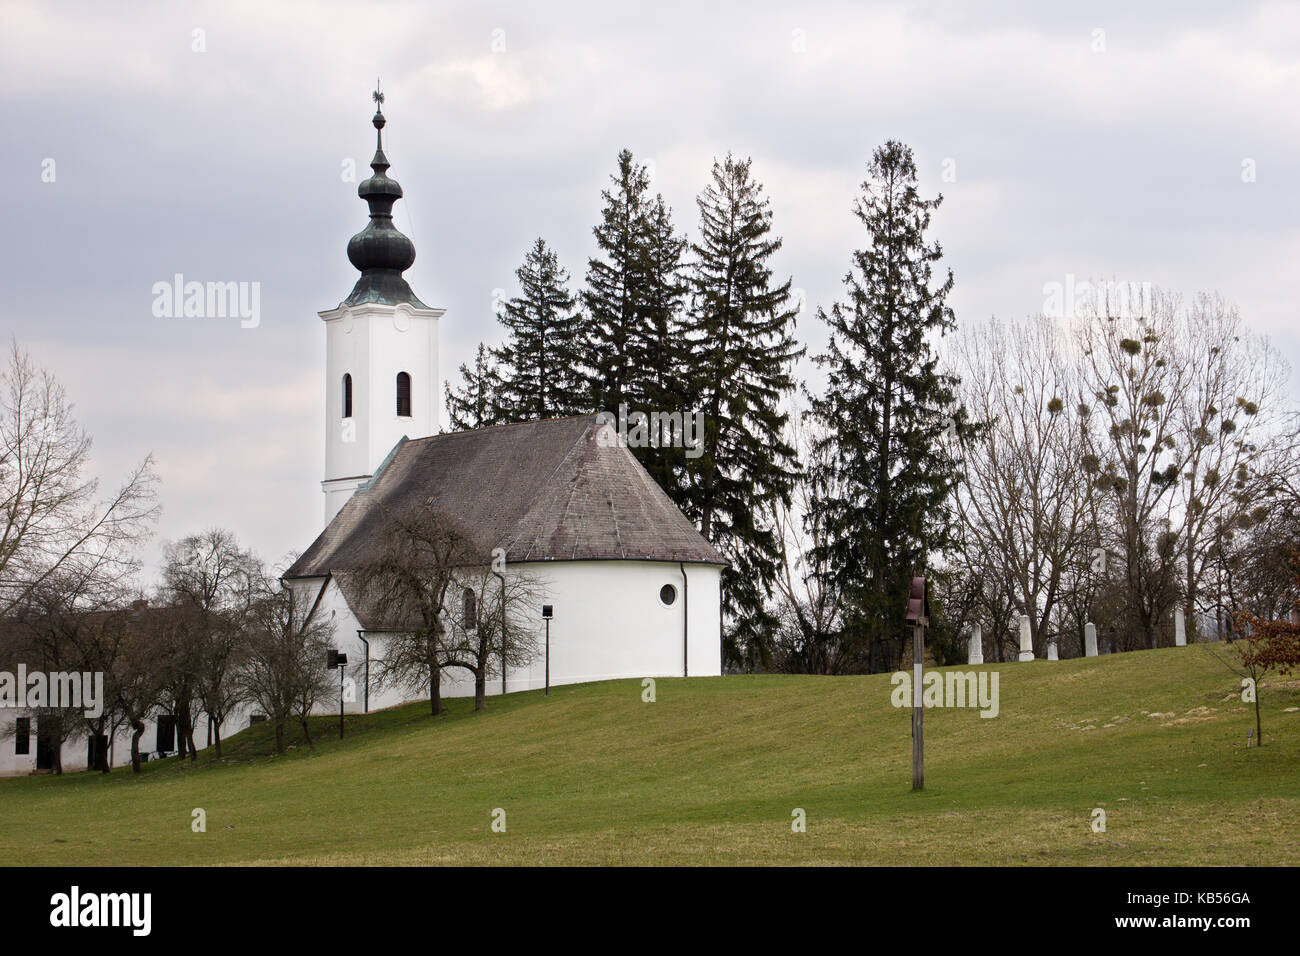 Schöne kleine ungarische Kirche in Szenna mit einem bewölkten Himmel Stockfoto